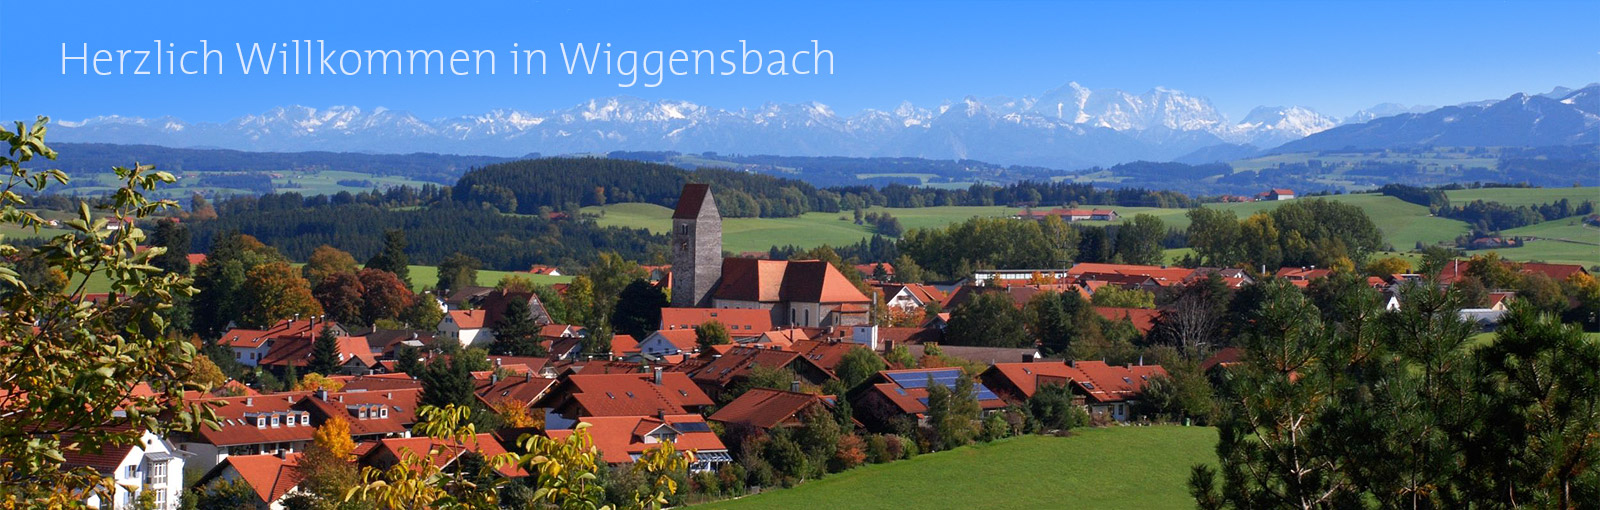 Herzlich Willkommen in Wiggensbach